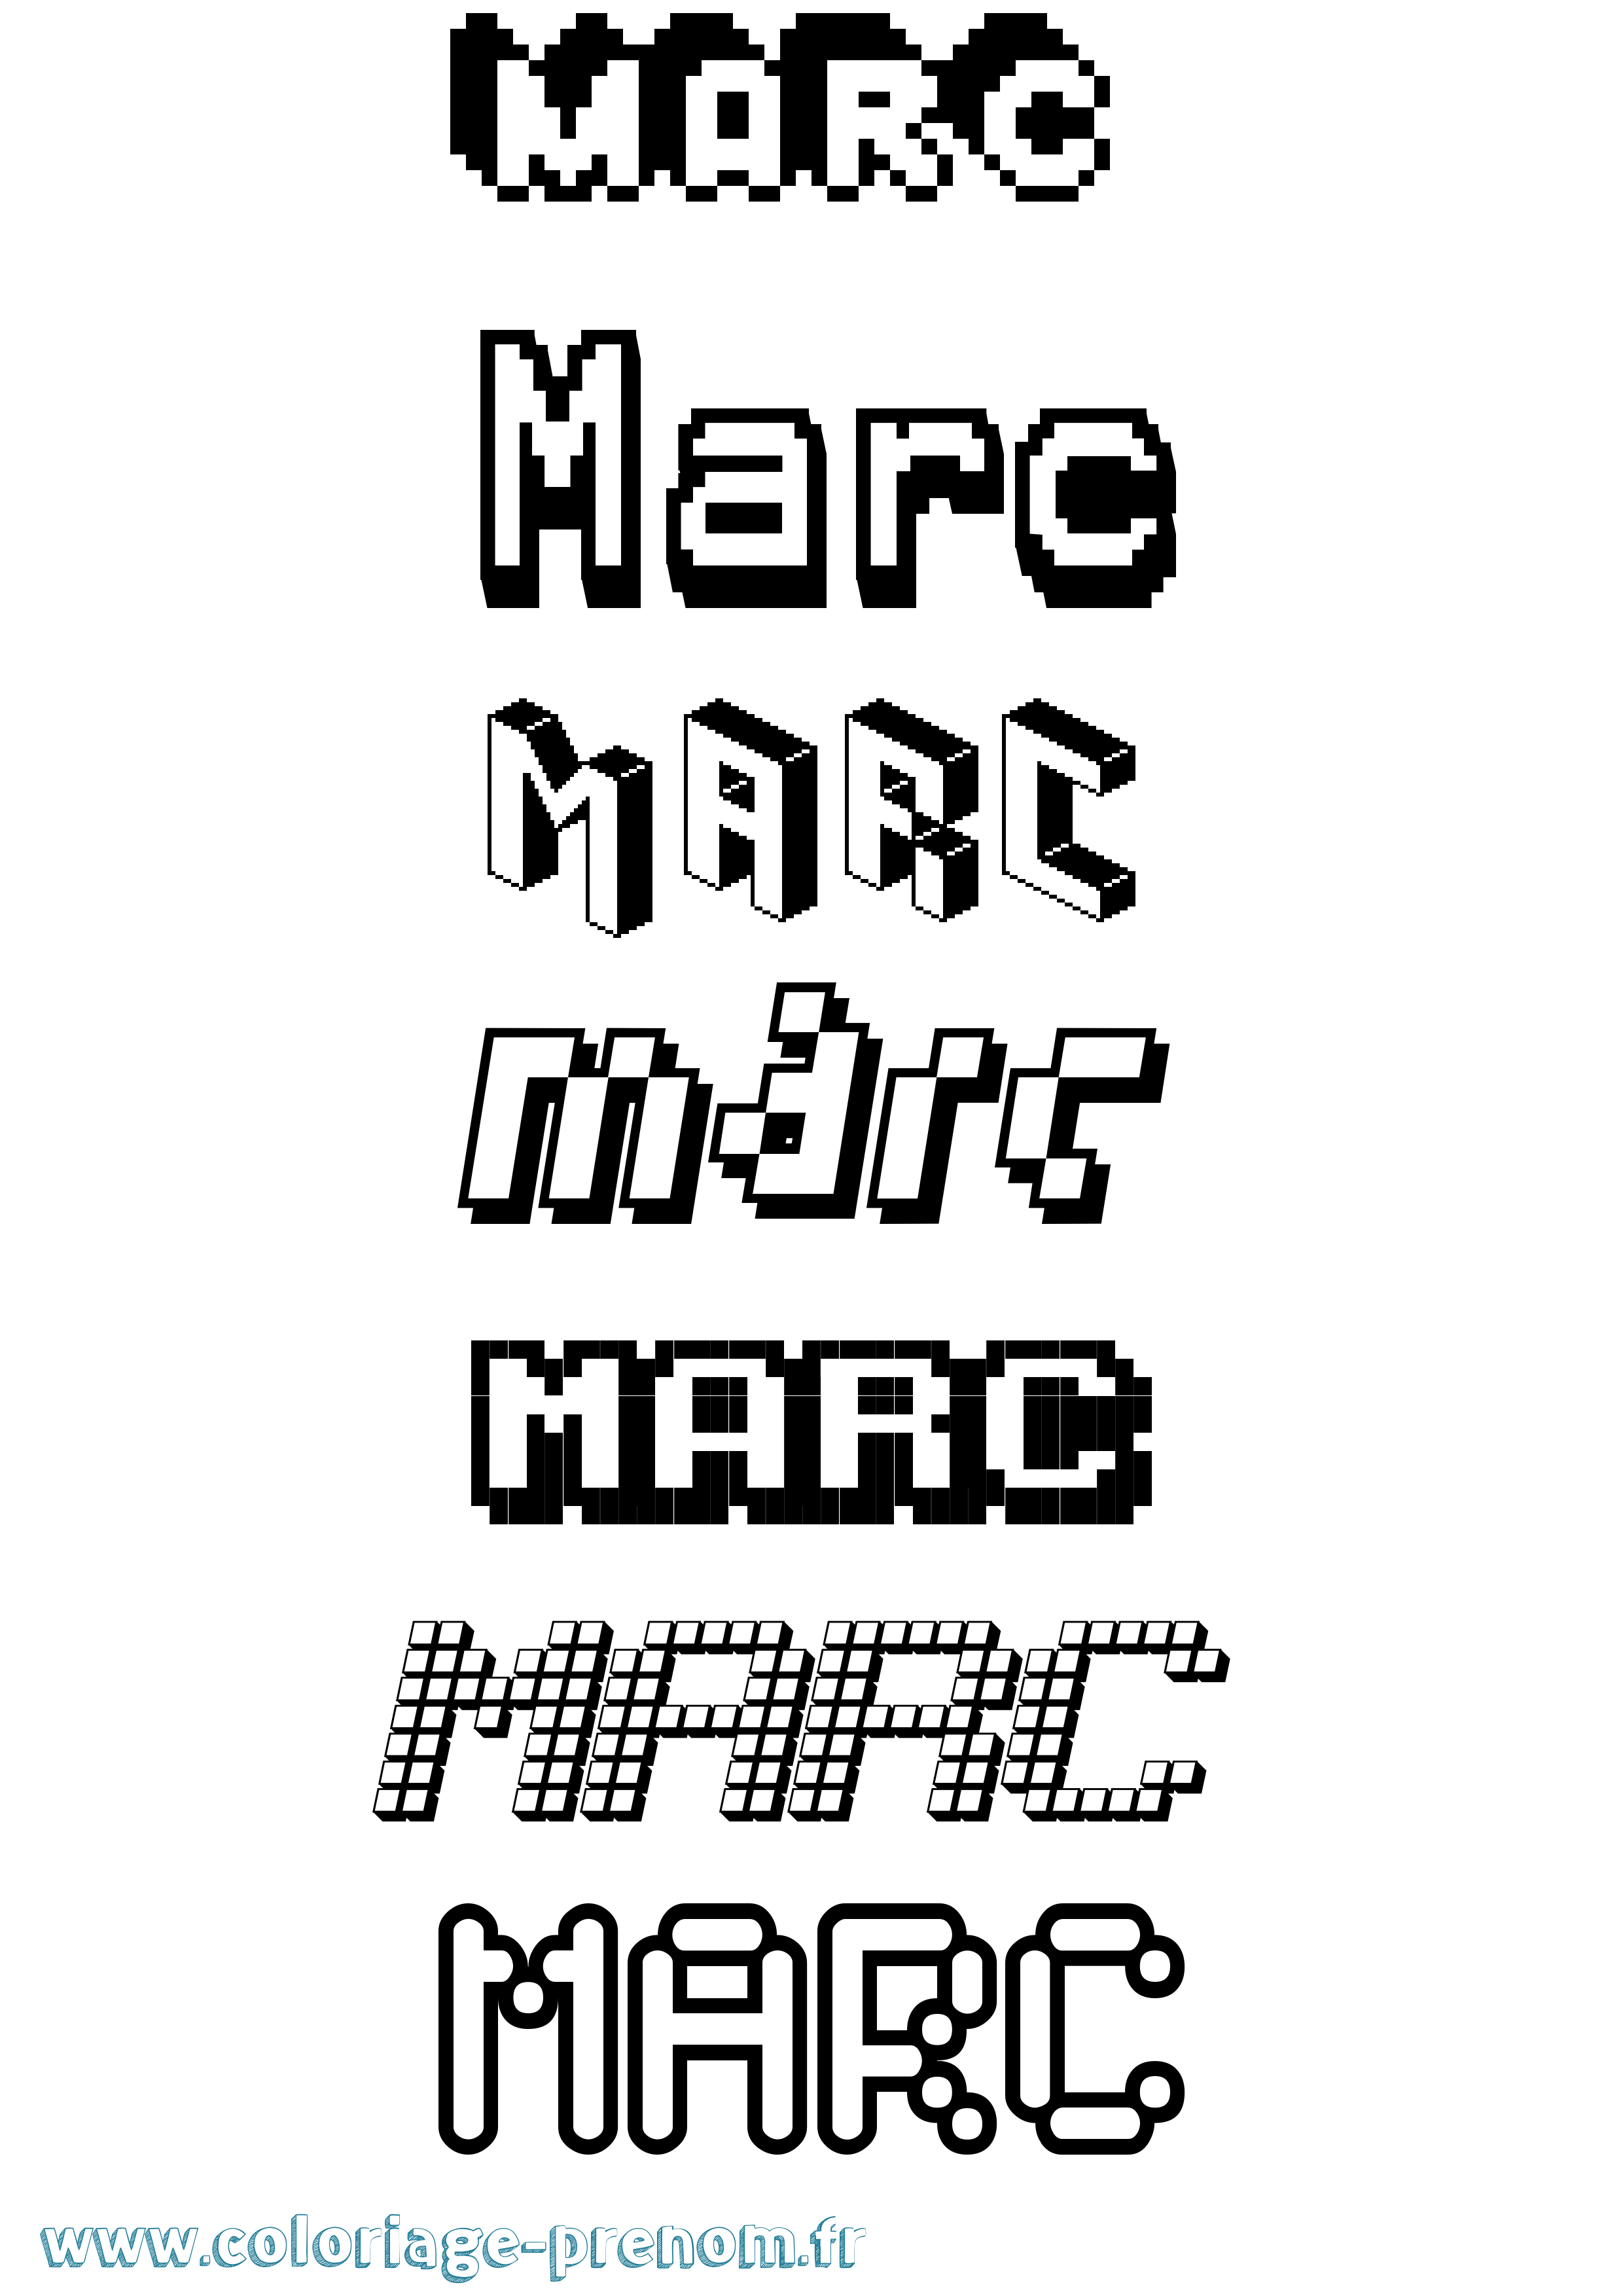 Coloriage prénom Marc Pixel